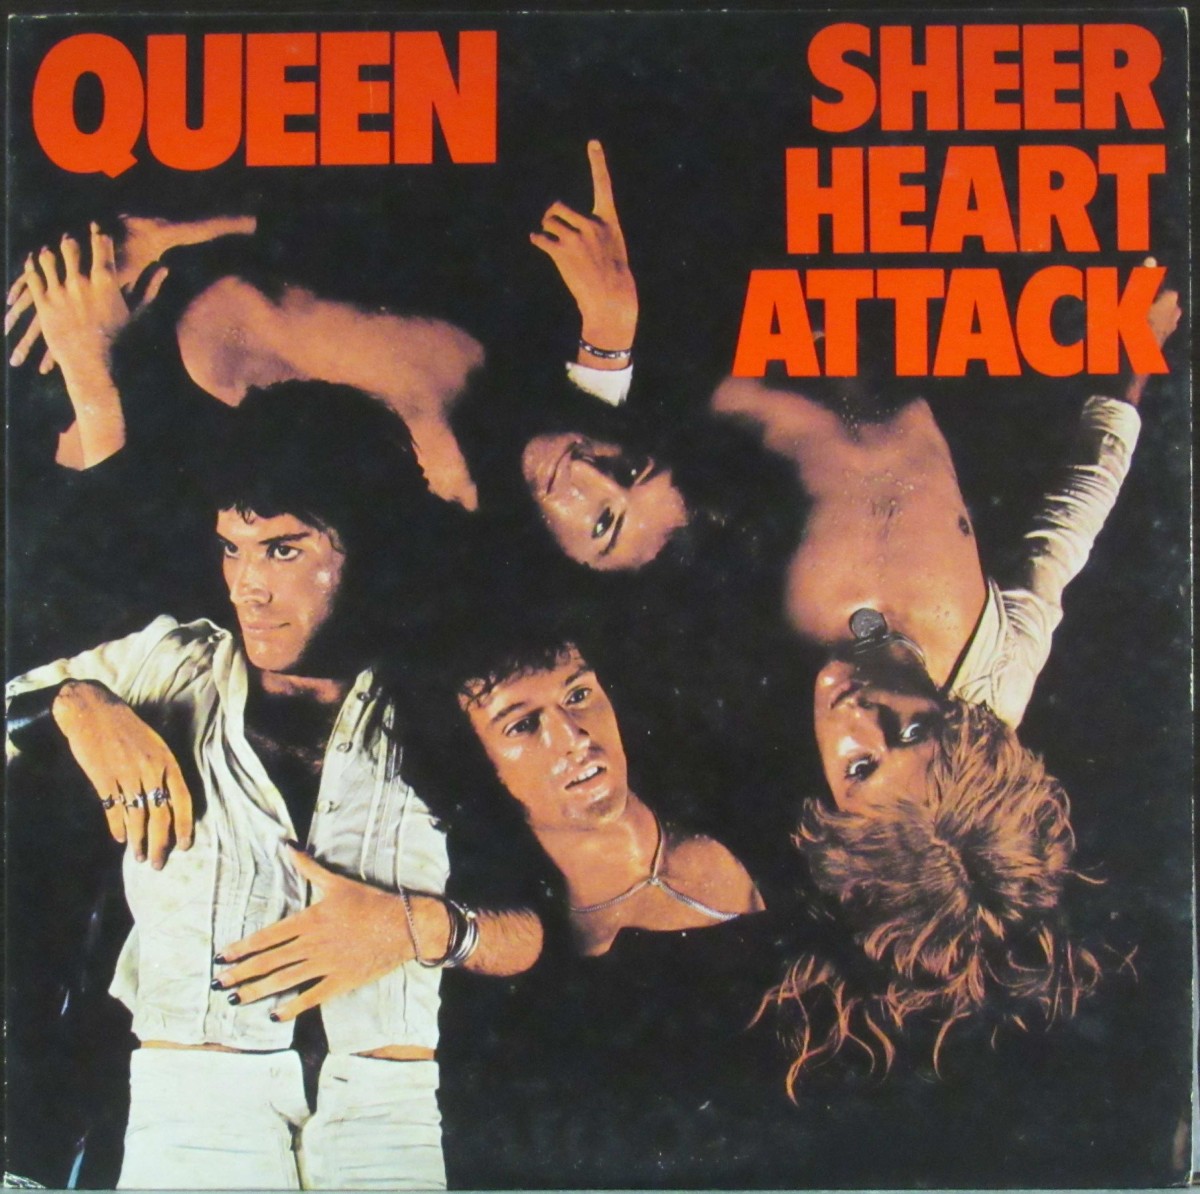 "Sheer Heart Attack", álbum de Queen